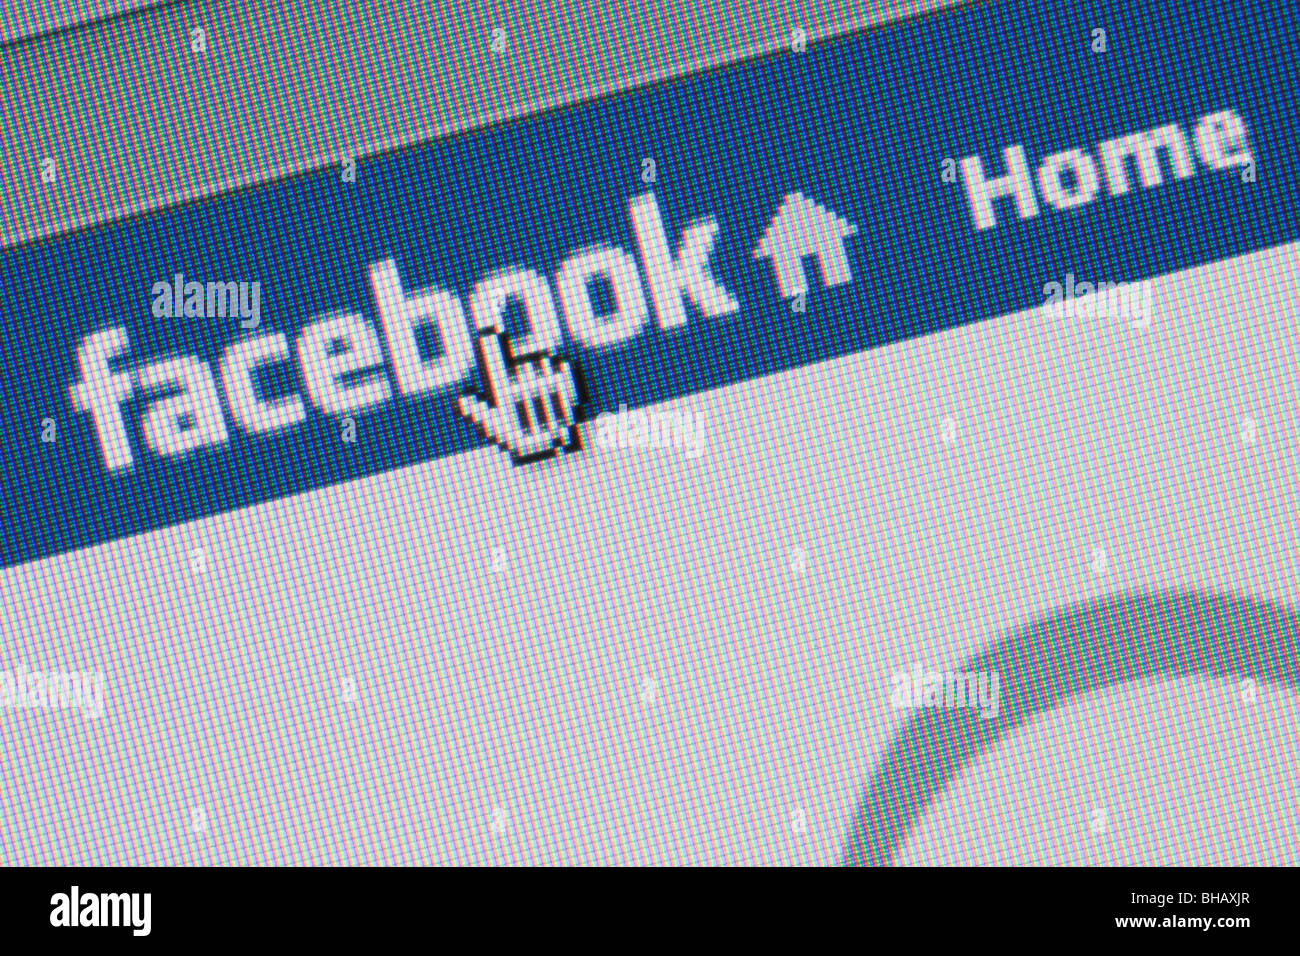 Close-up de capture d'un site de réseautage social Facebook logo sur page d'accueil avec des flèches pointant. Angleterre Royaume-uni Grande-Bretagne Banque D'Images